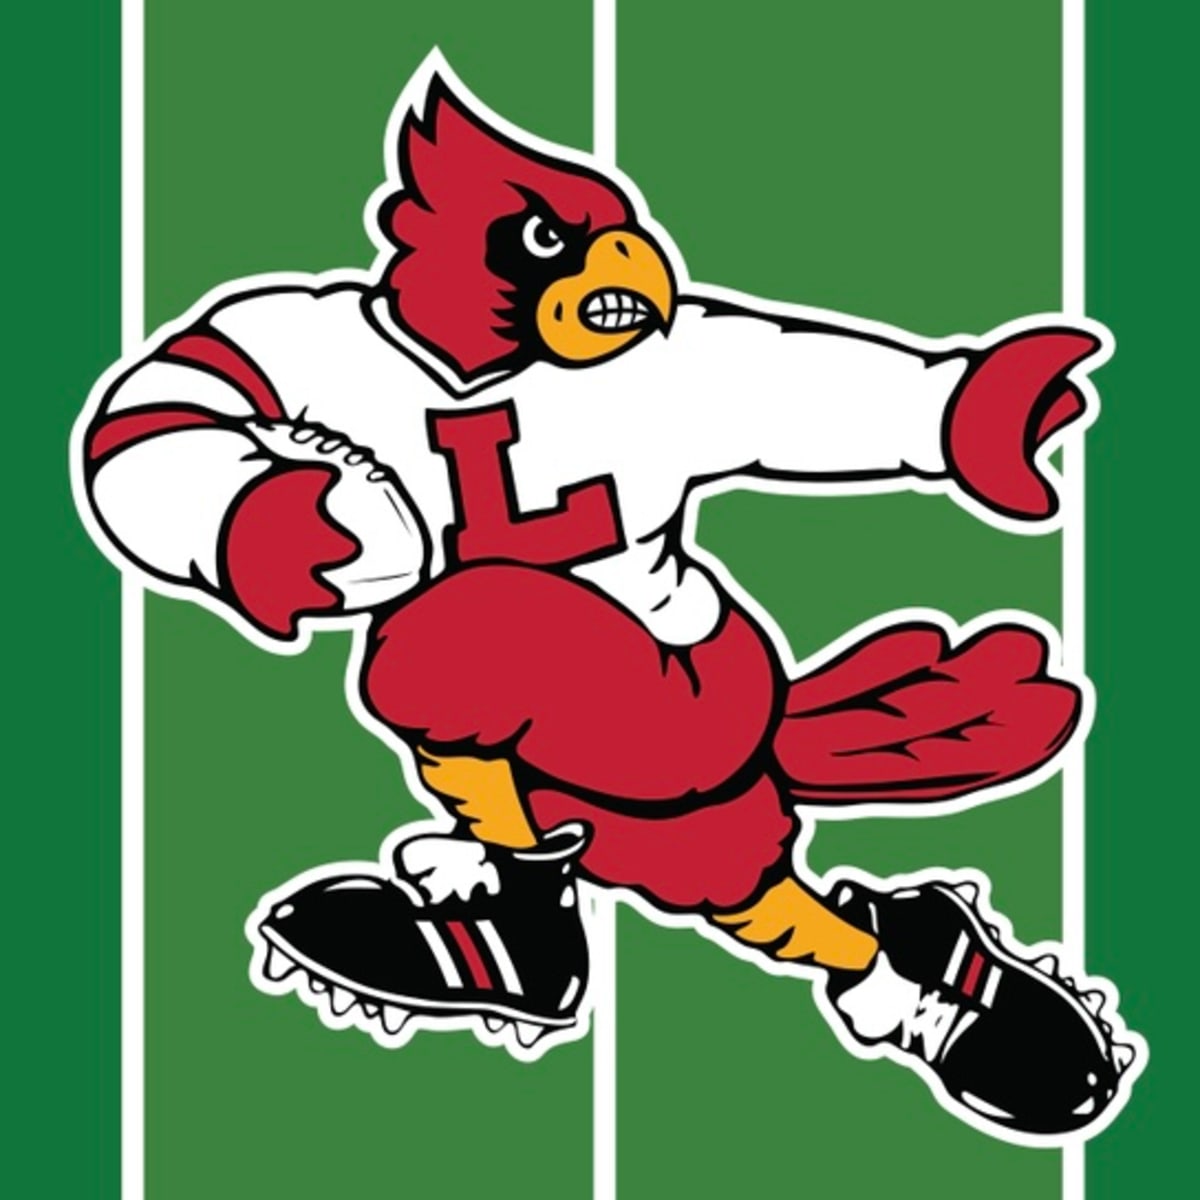 Louisville cardinals Football university of louisville mascot T